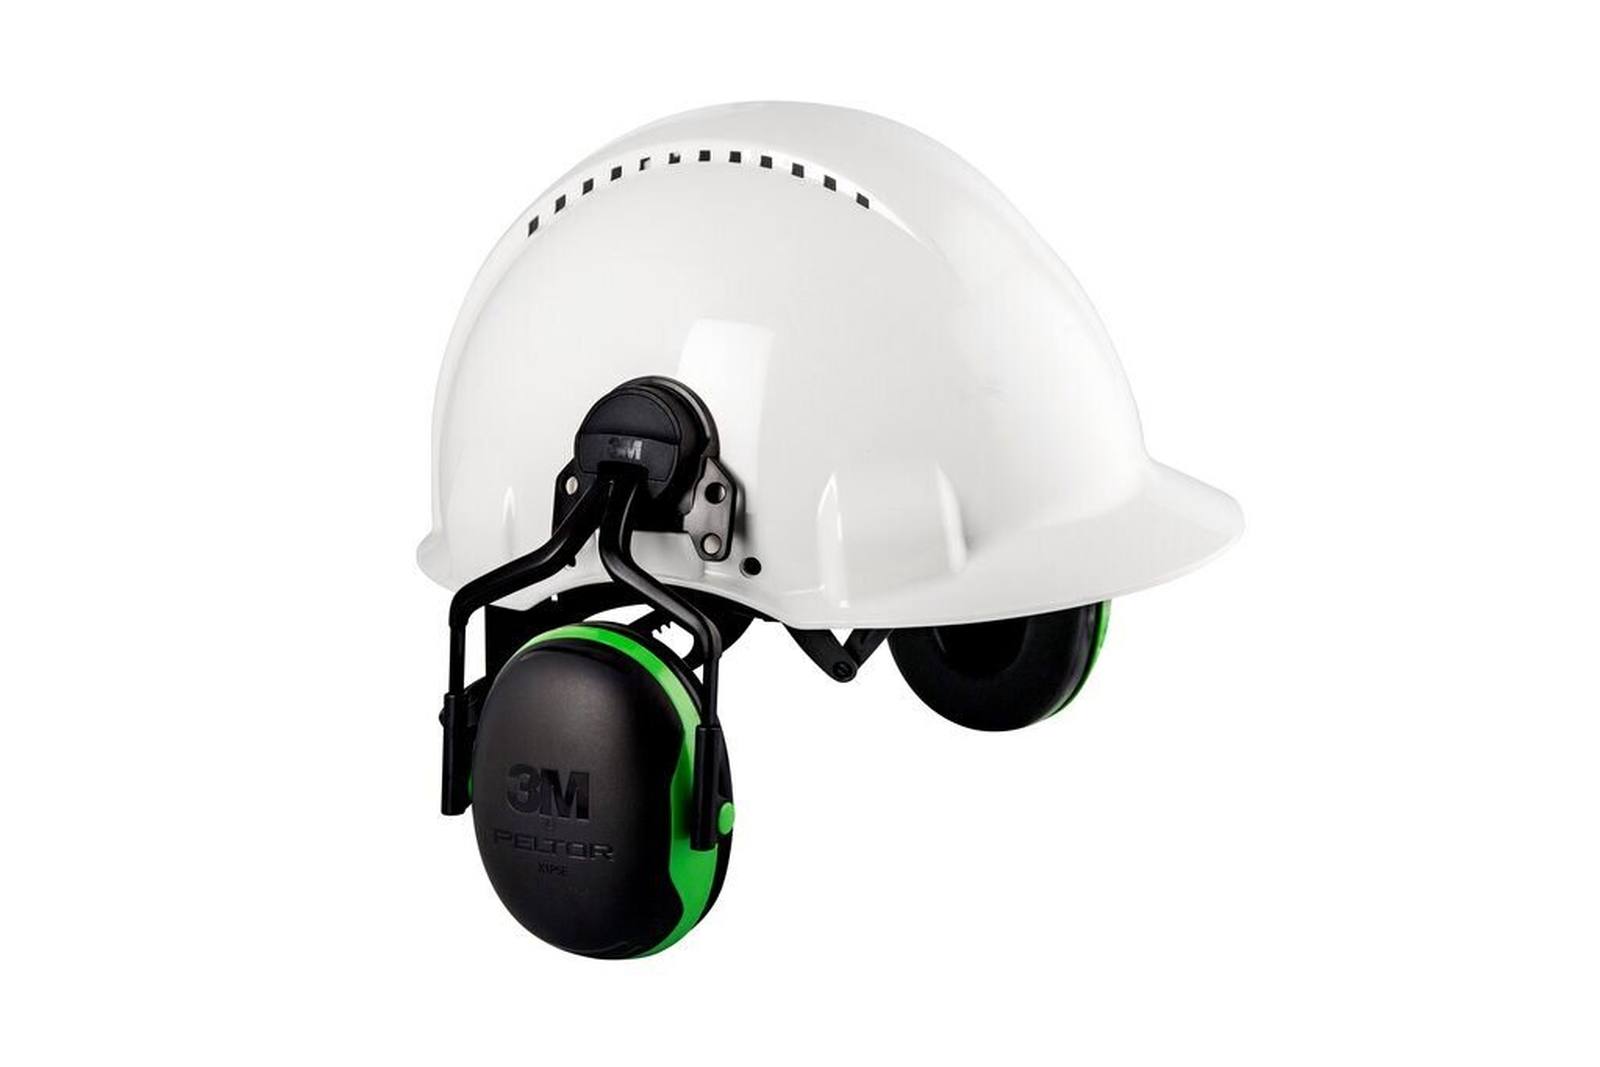 3M Peltor casque antibruit, X1P3E fixation sur casque, vert, SNR = 26 dB avec adaptateur de casque P3E (pour tous les casques 3M, sauf G2000)